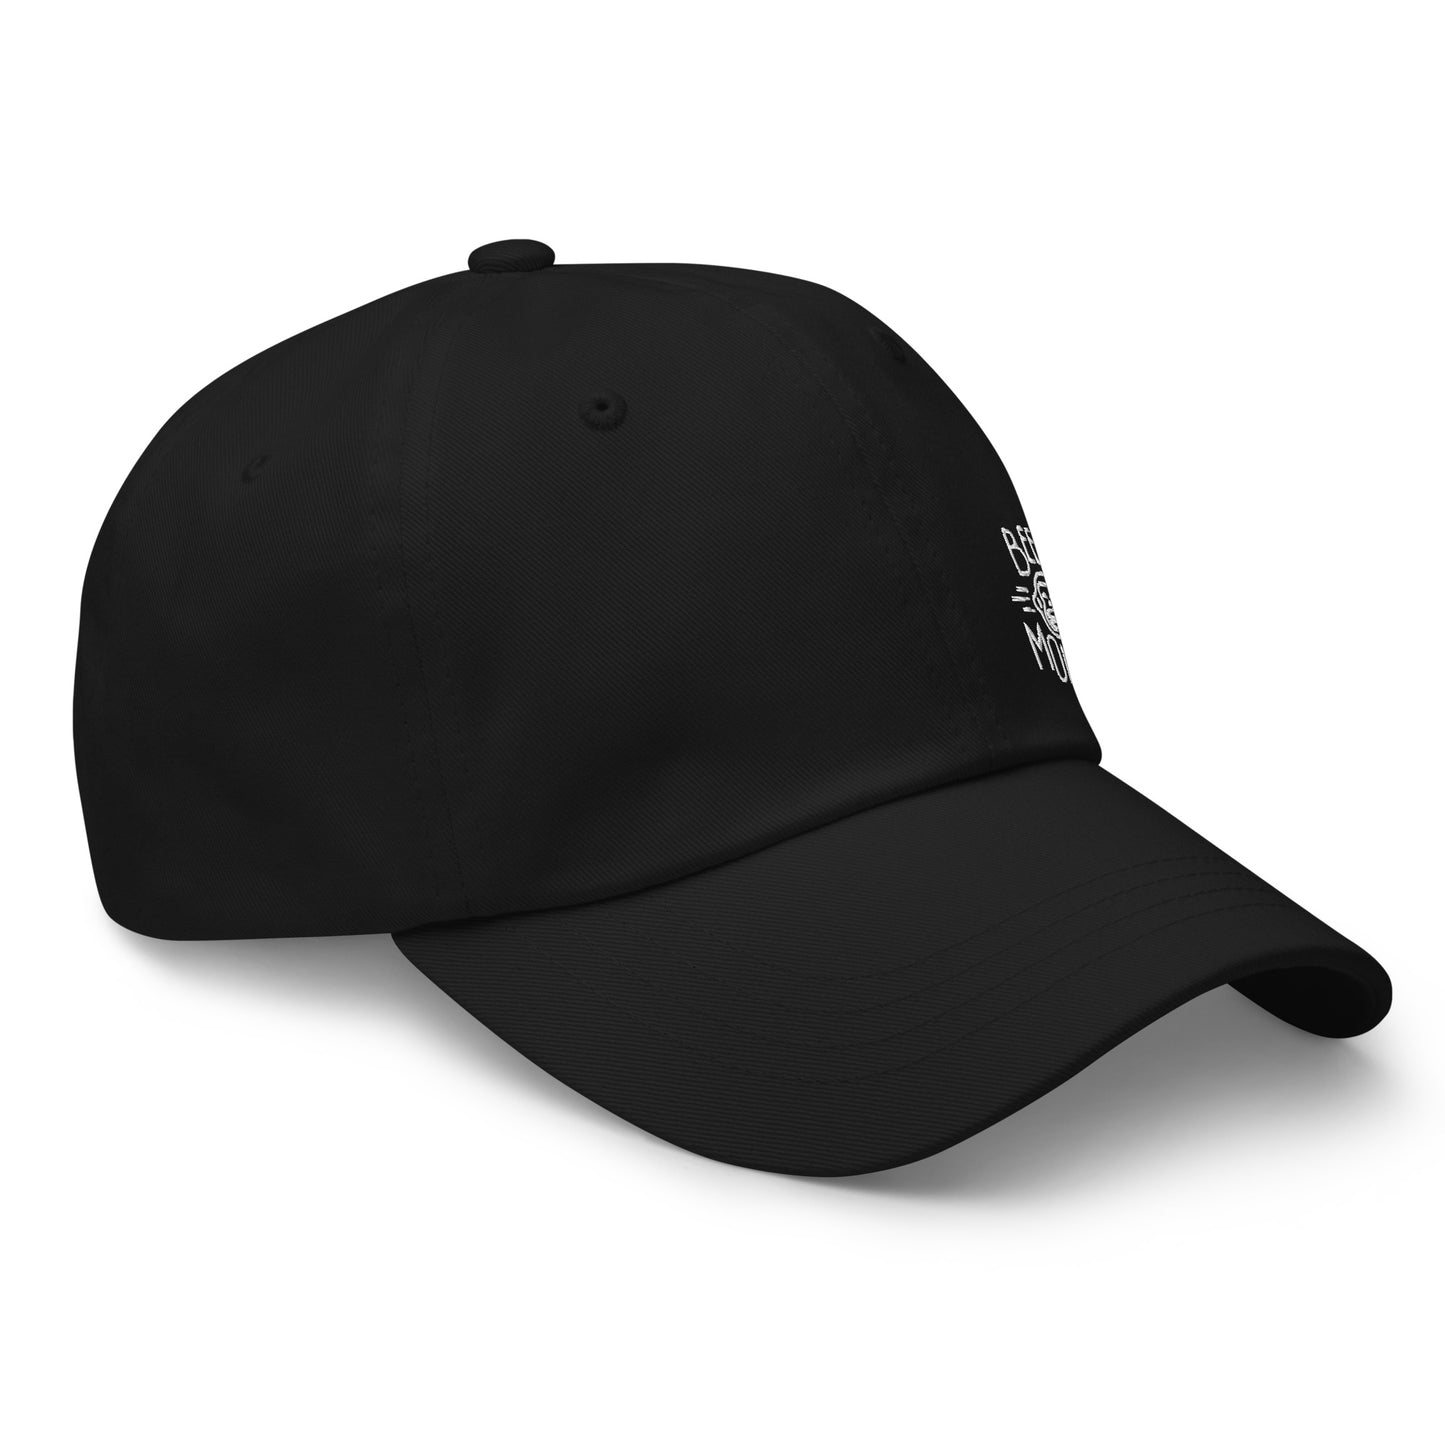 Unisex hat